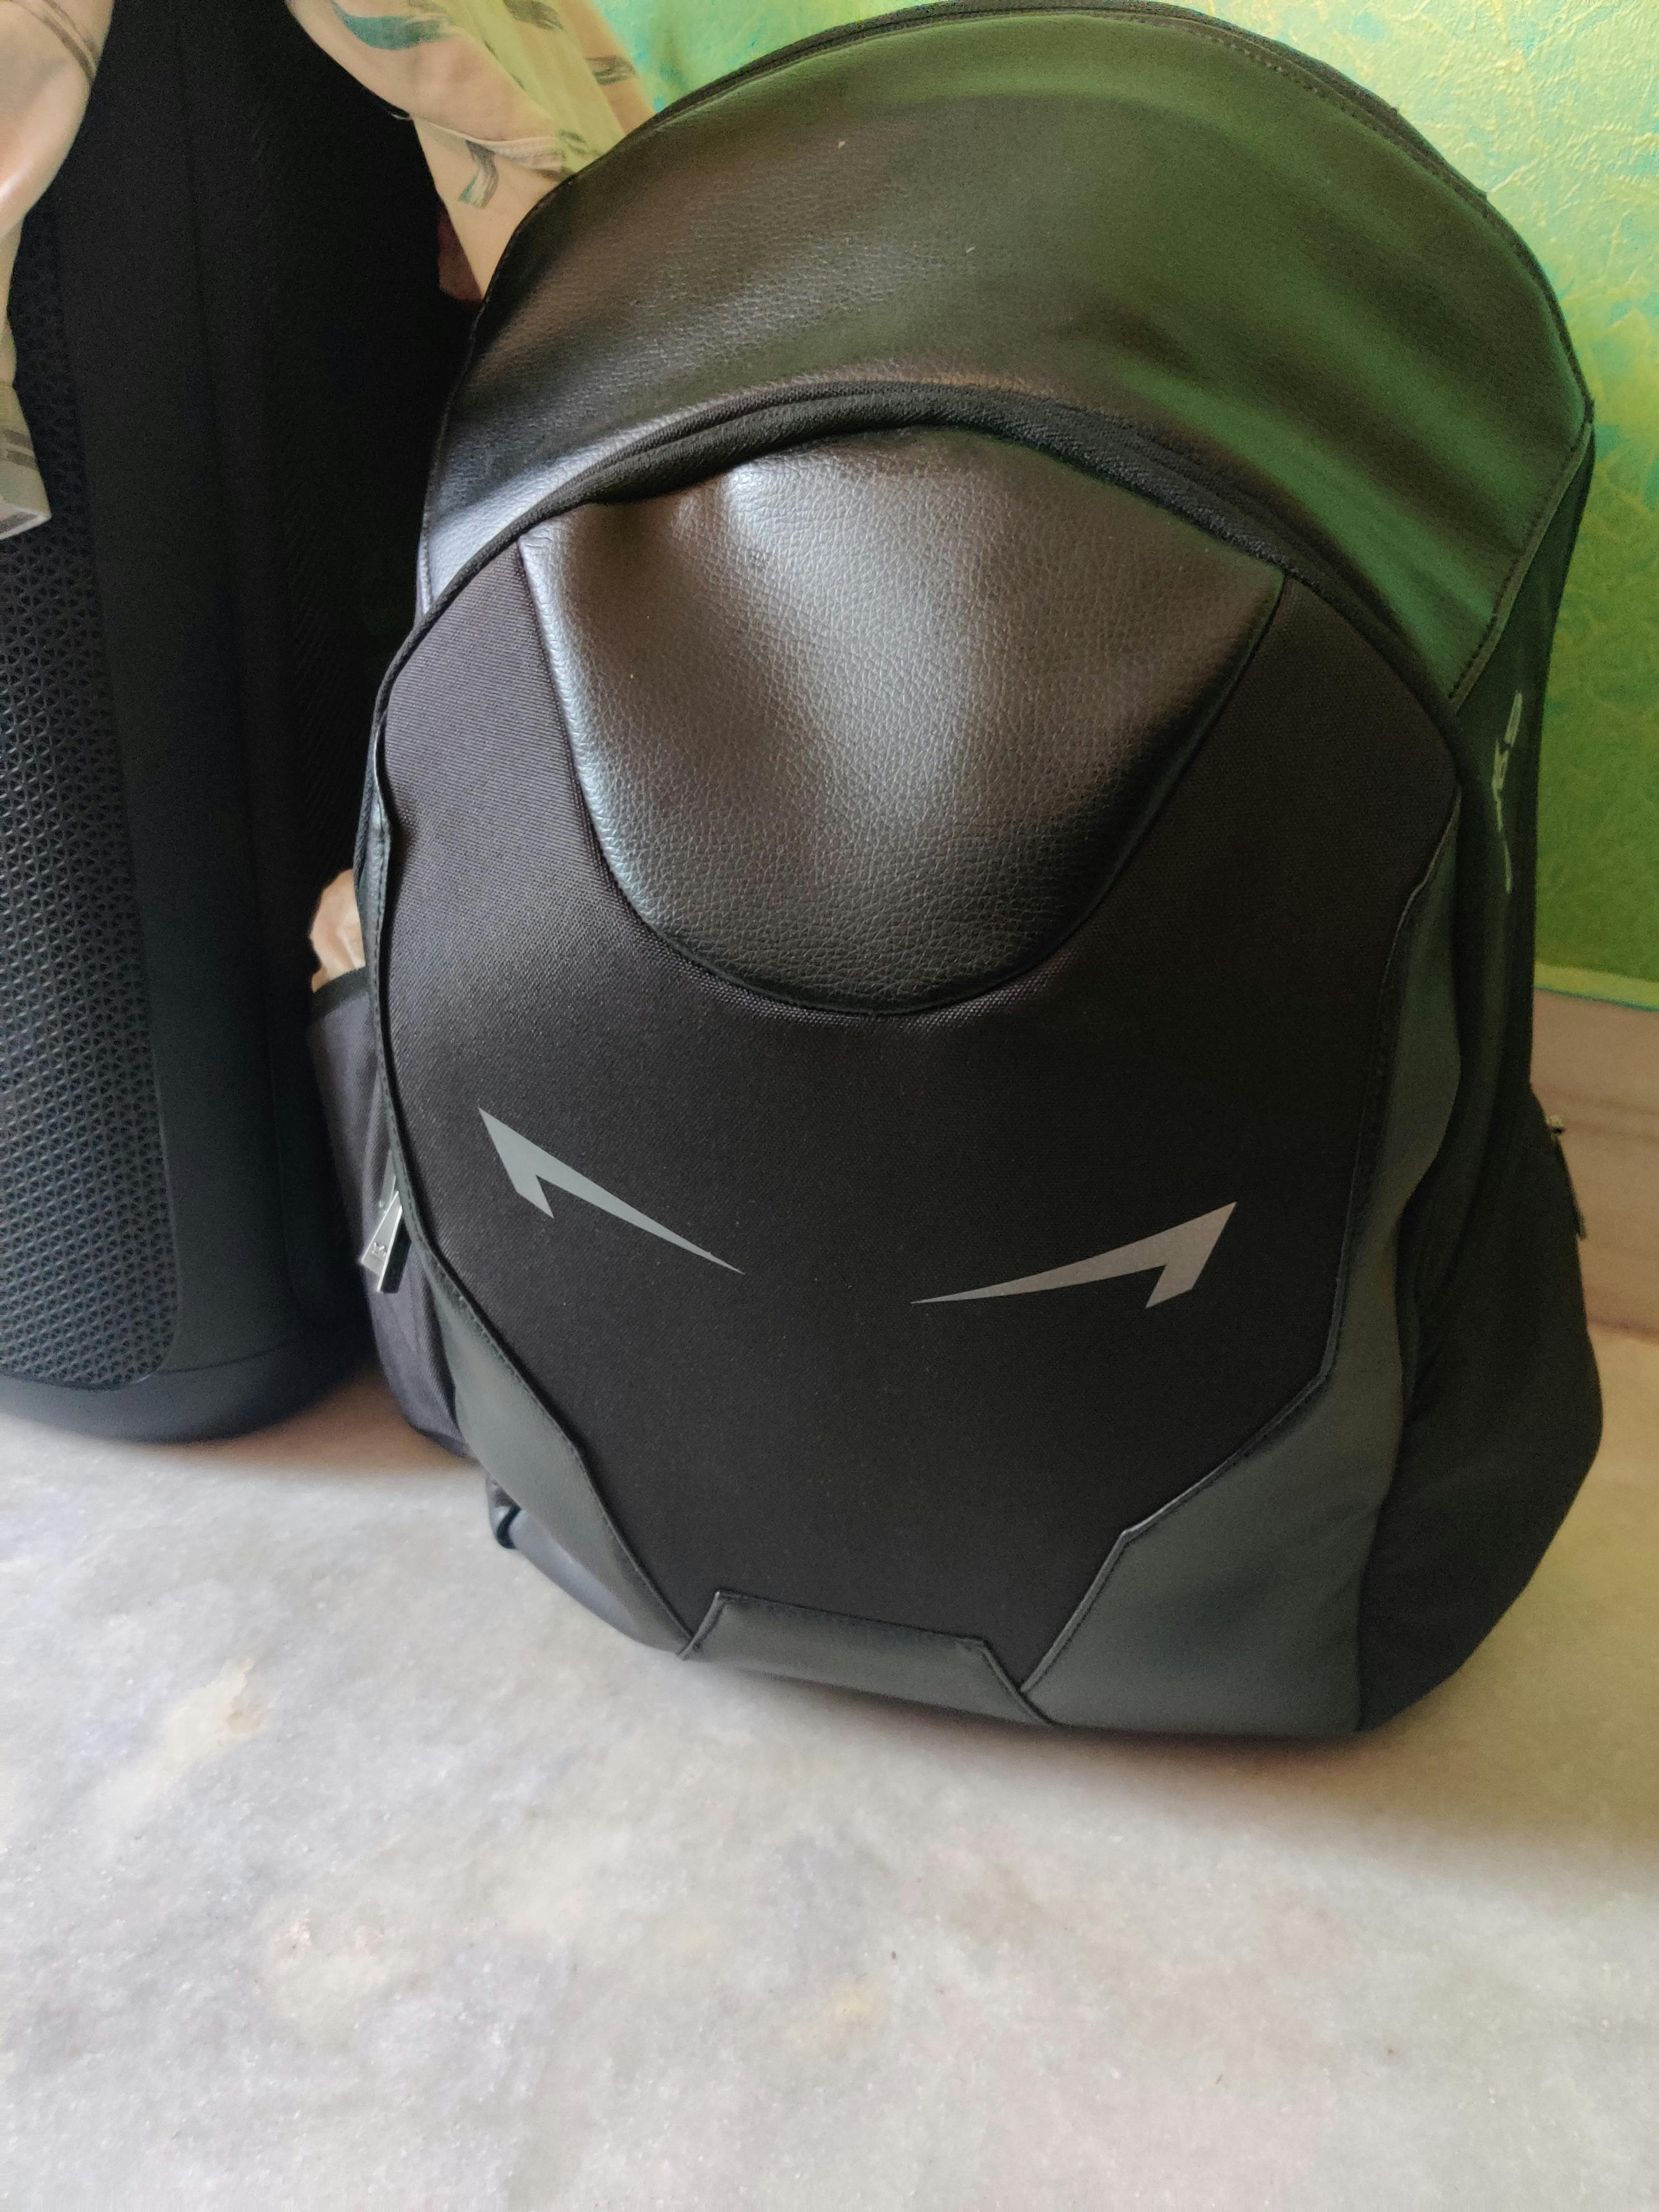 Buy Iron Man Backpack Online India | Ubuy